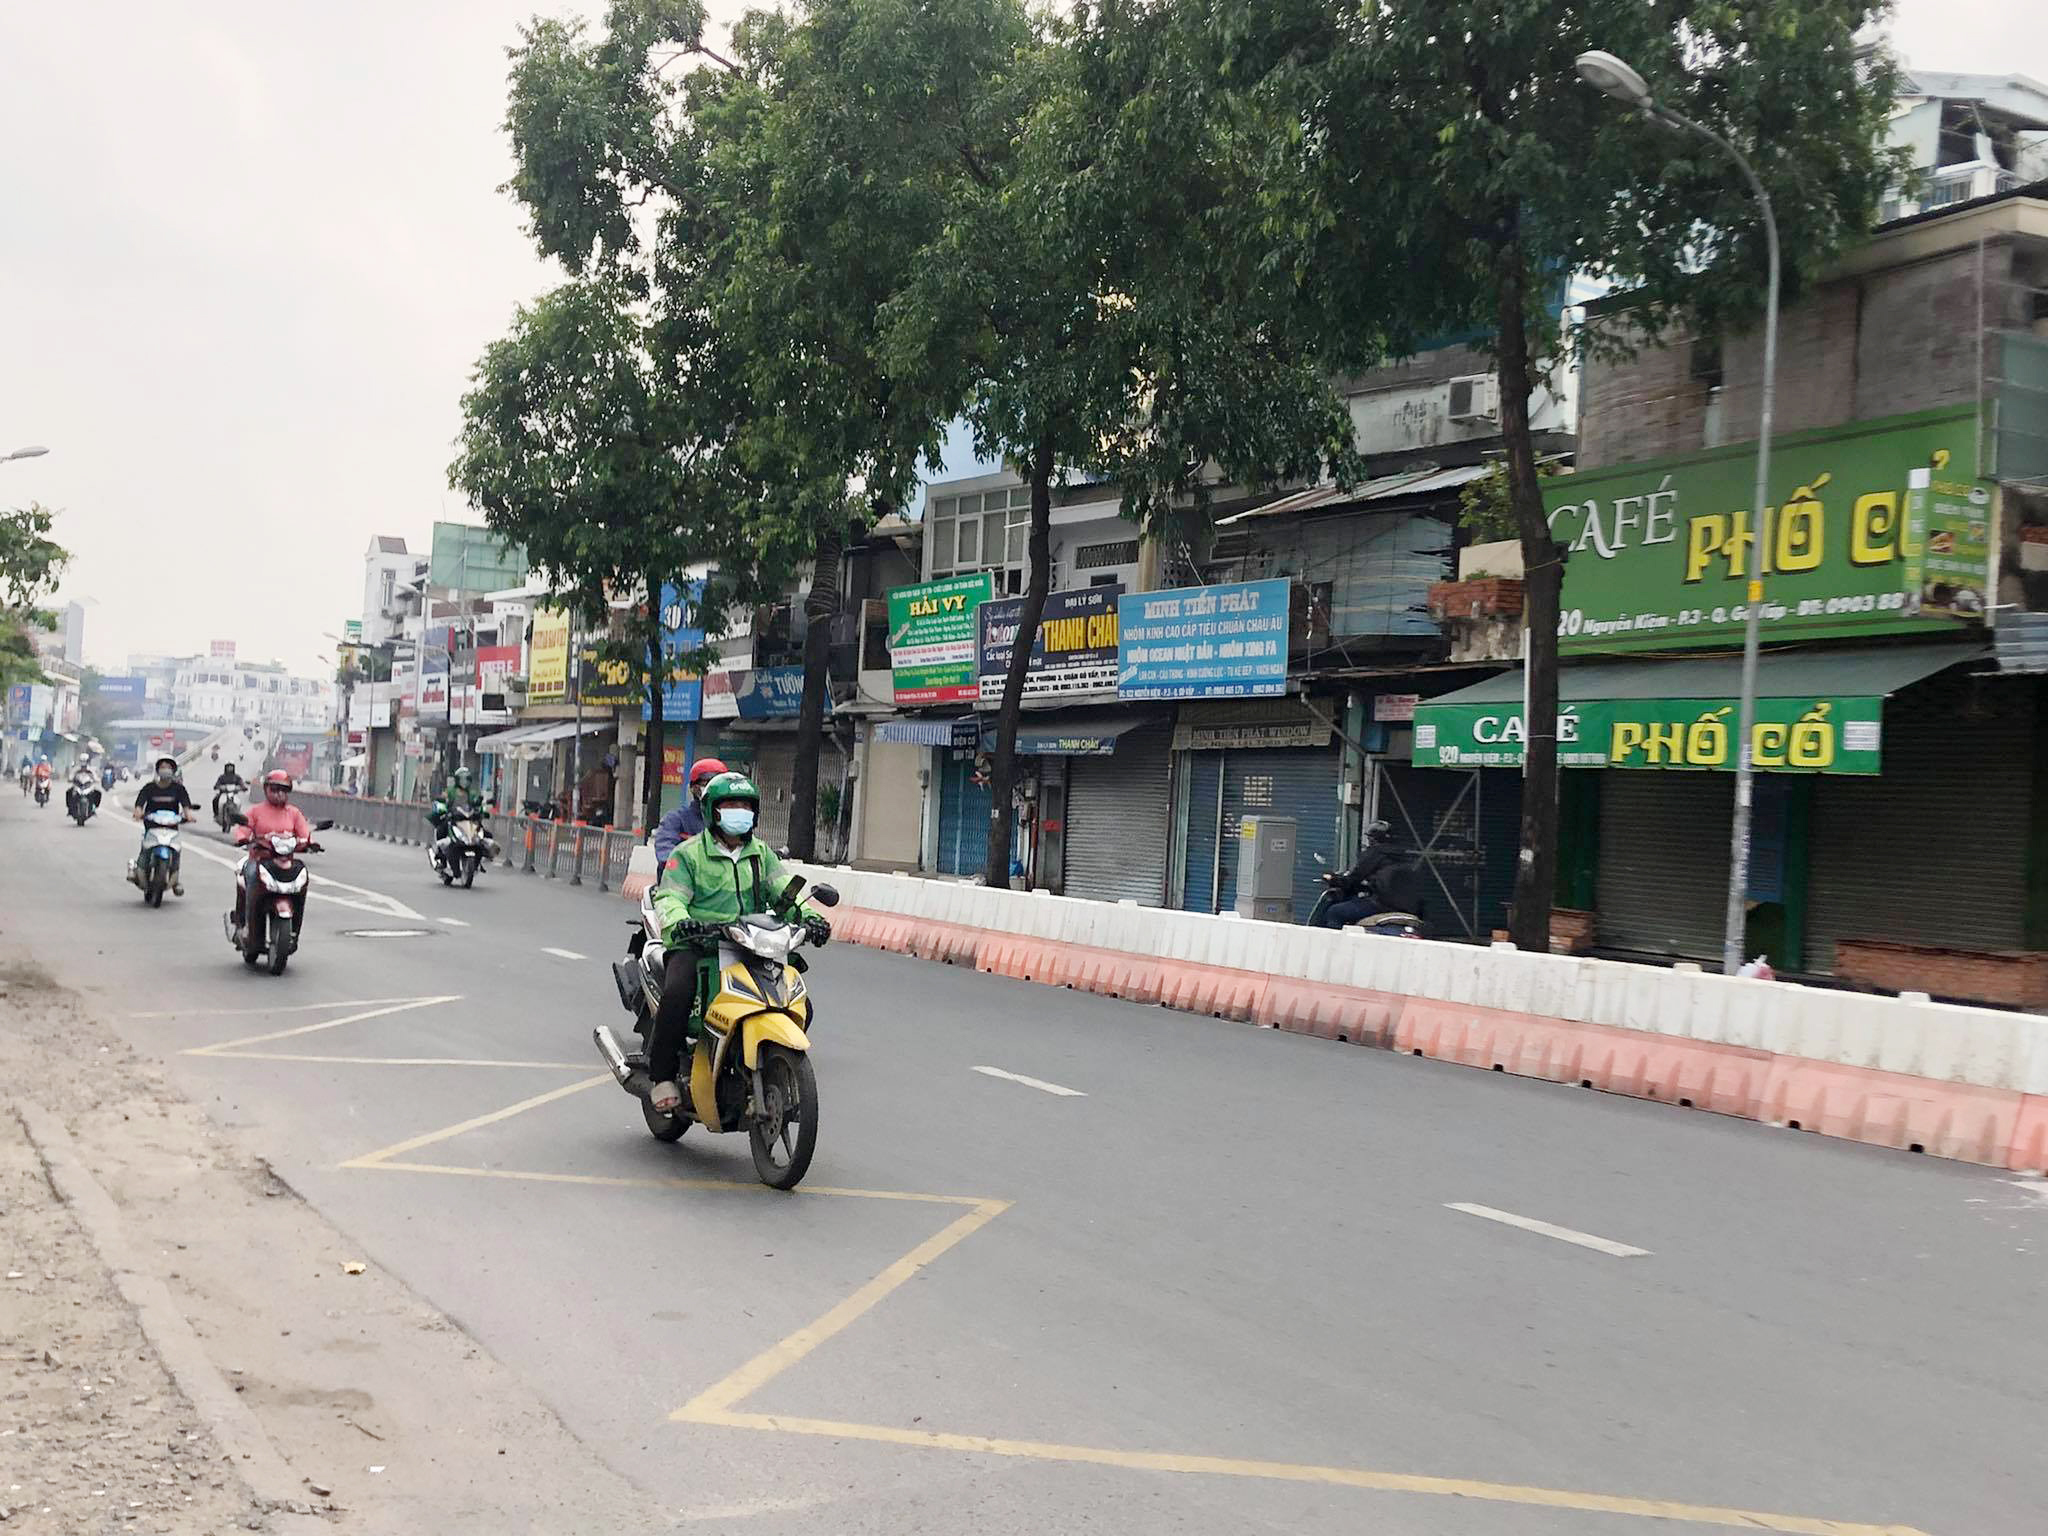 Sáng 13/7, người dân lưu thông trên đường Nguyễn Kiệm hướng từ quận Gò Vấp vào trung tâm TP.HCM đã thoát khỏi cảnh xếp hàng dài trên đường. Nguyên nhân là chốt kiểm soát dịch COVID-19 tại đây đã được chuyển đến vị trí phù hợp hơn.